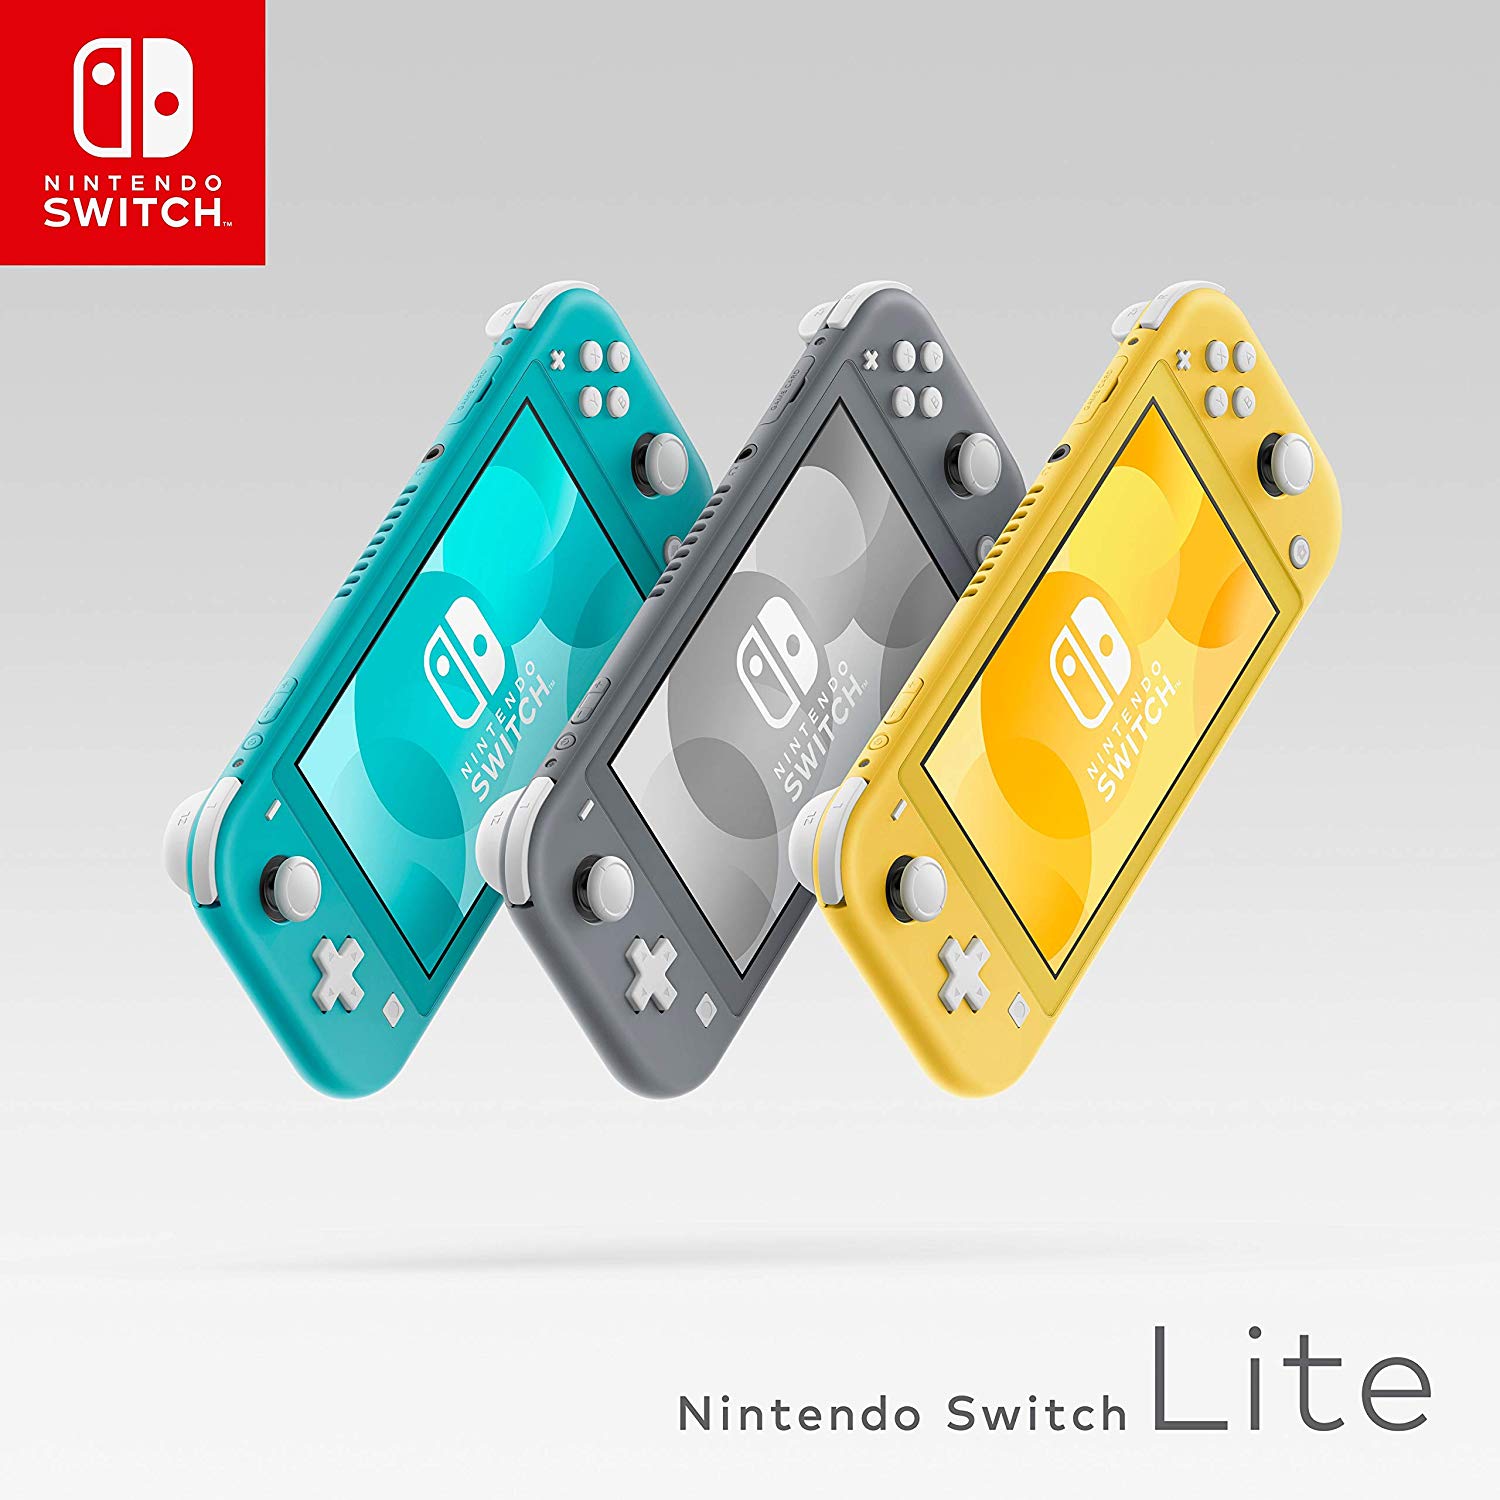 Nintendo Switch Lite, ¿Una gran opción para estas navidades